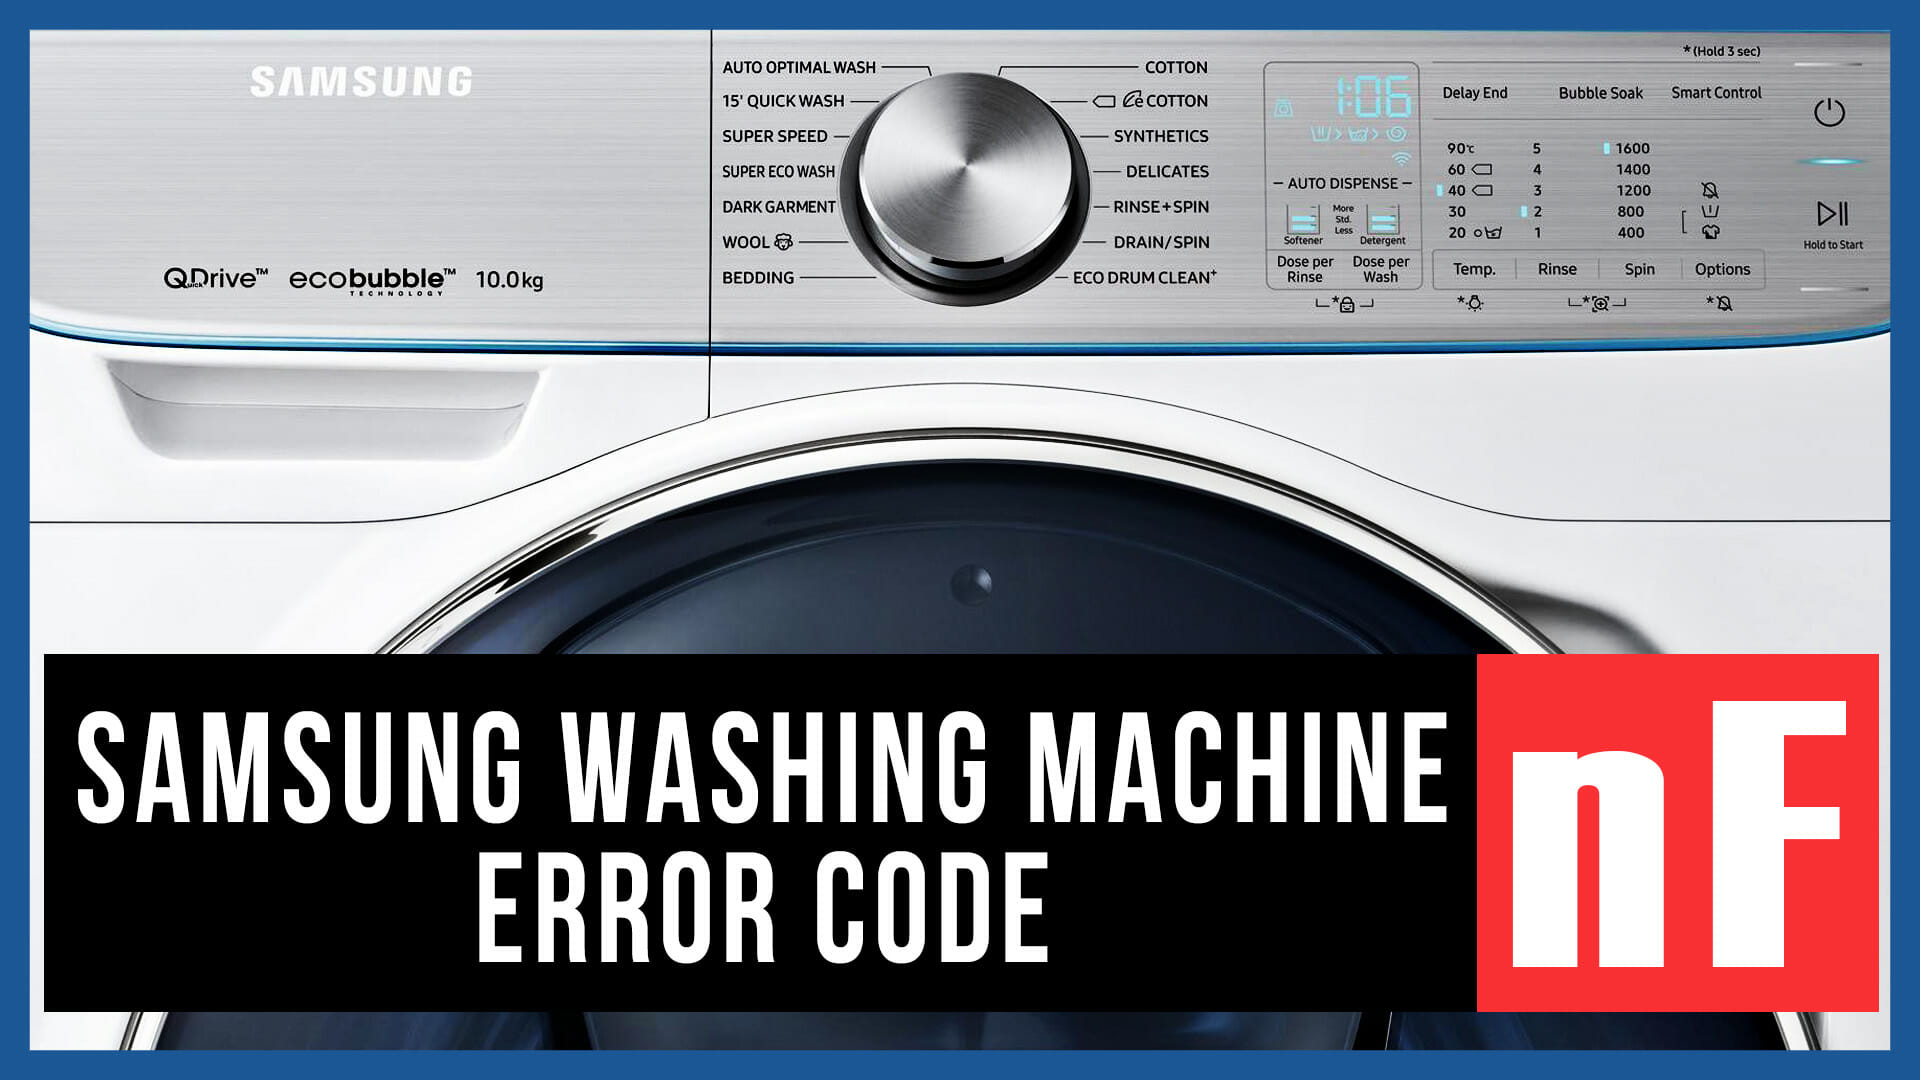 Samsung washer error code nF